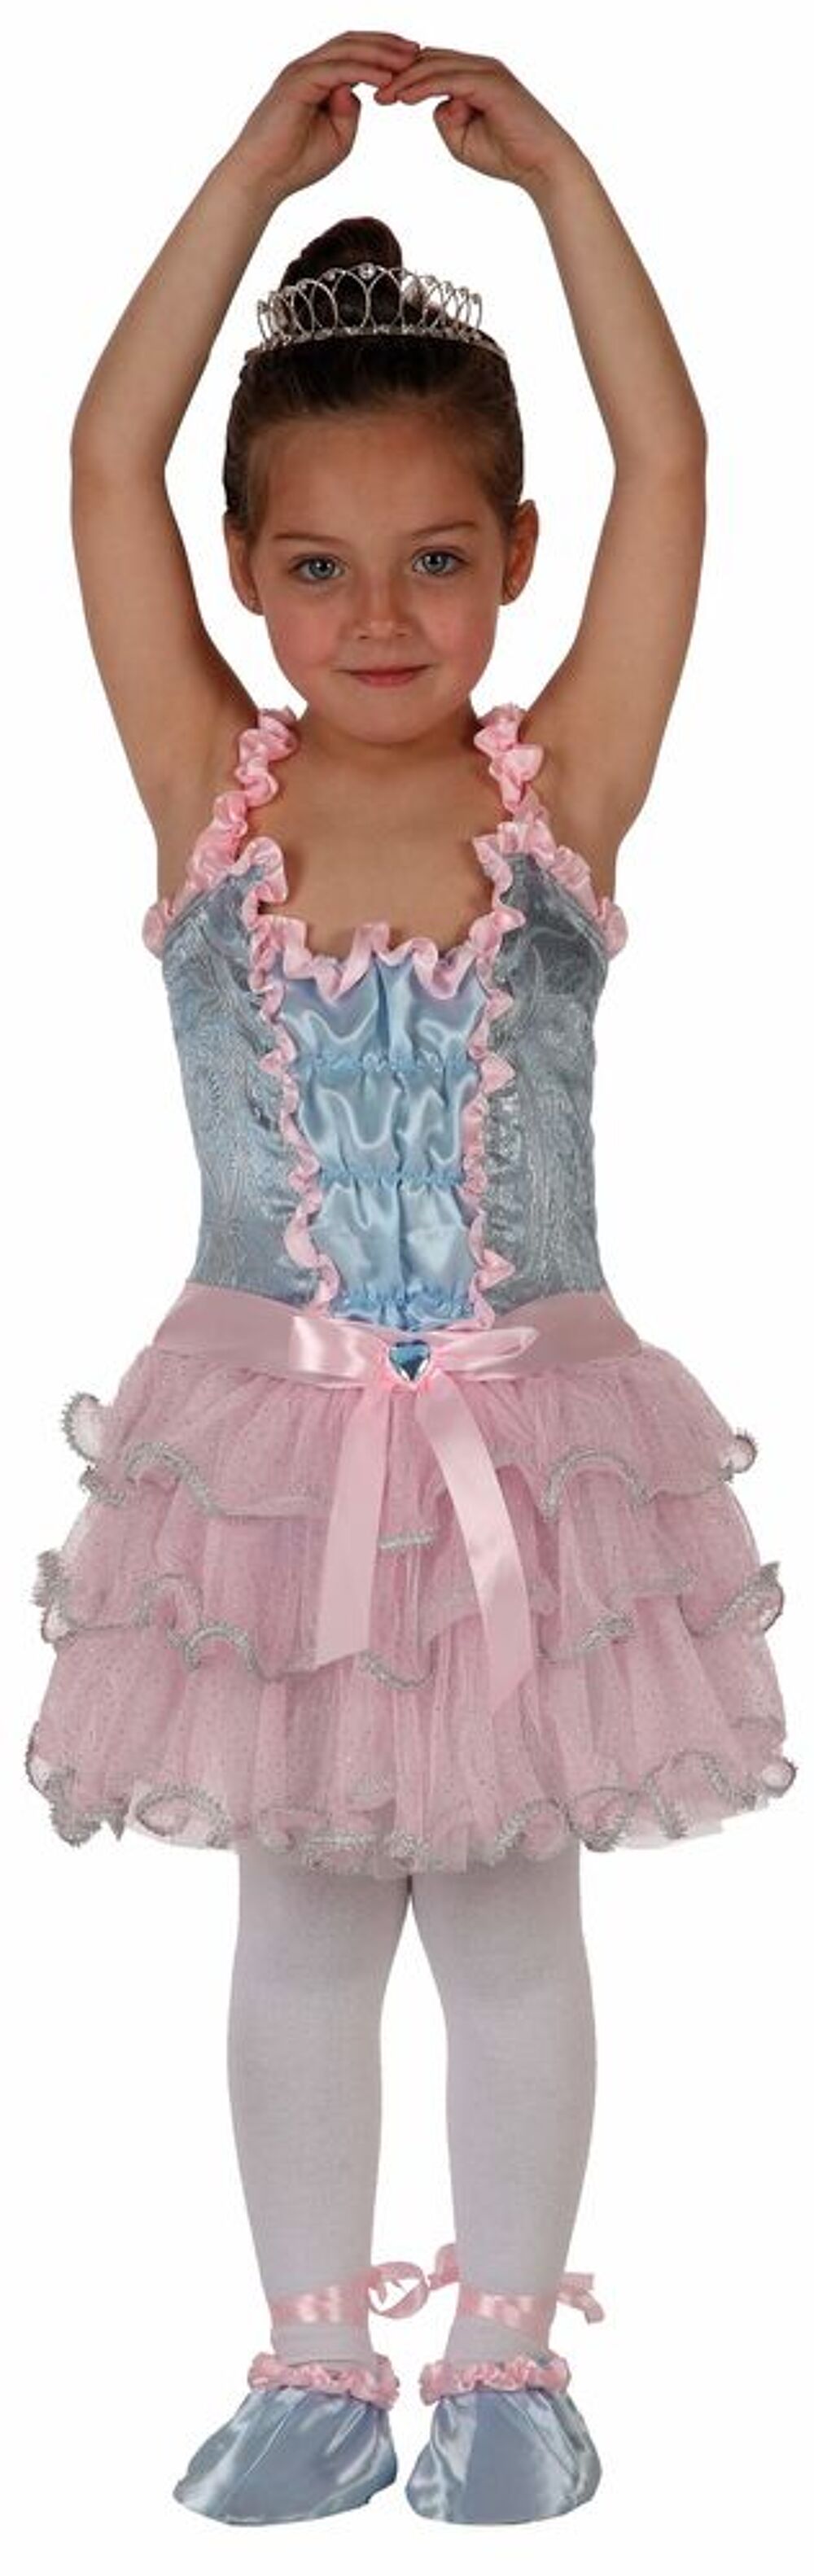 Deguisement costume Danseuse ballerine rose et bleu 7-9 ans Jeux / jouets